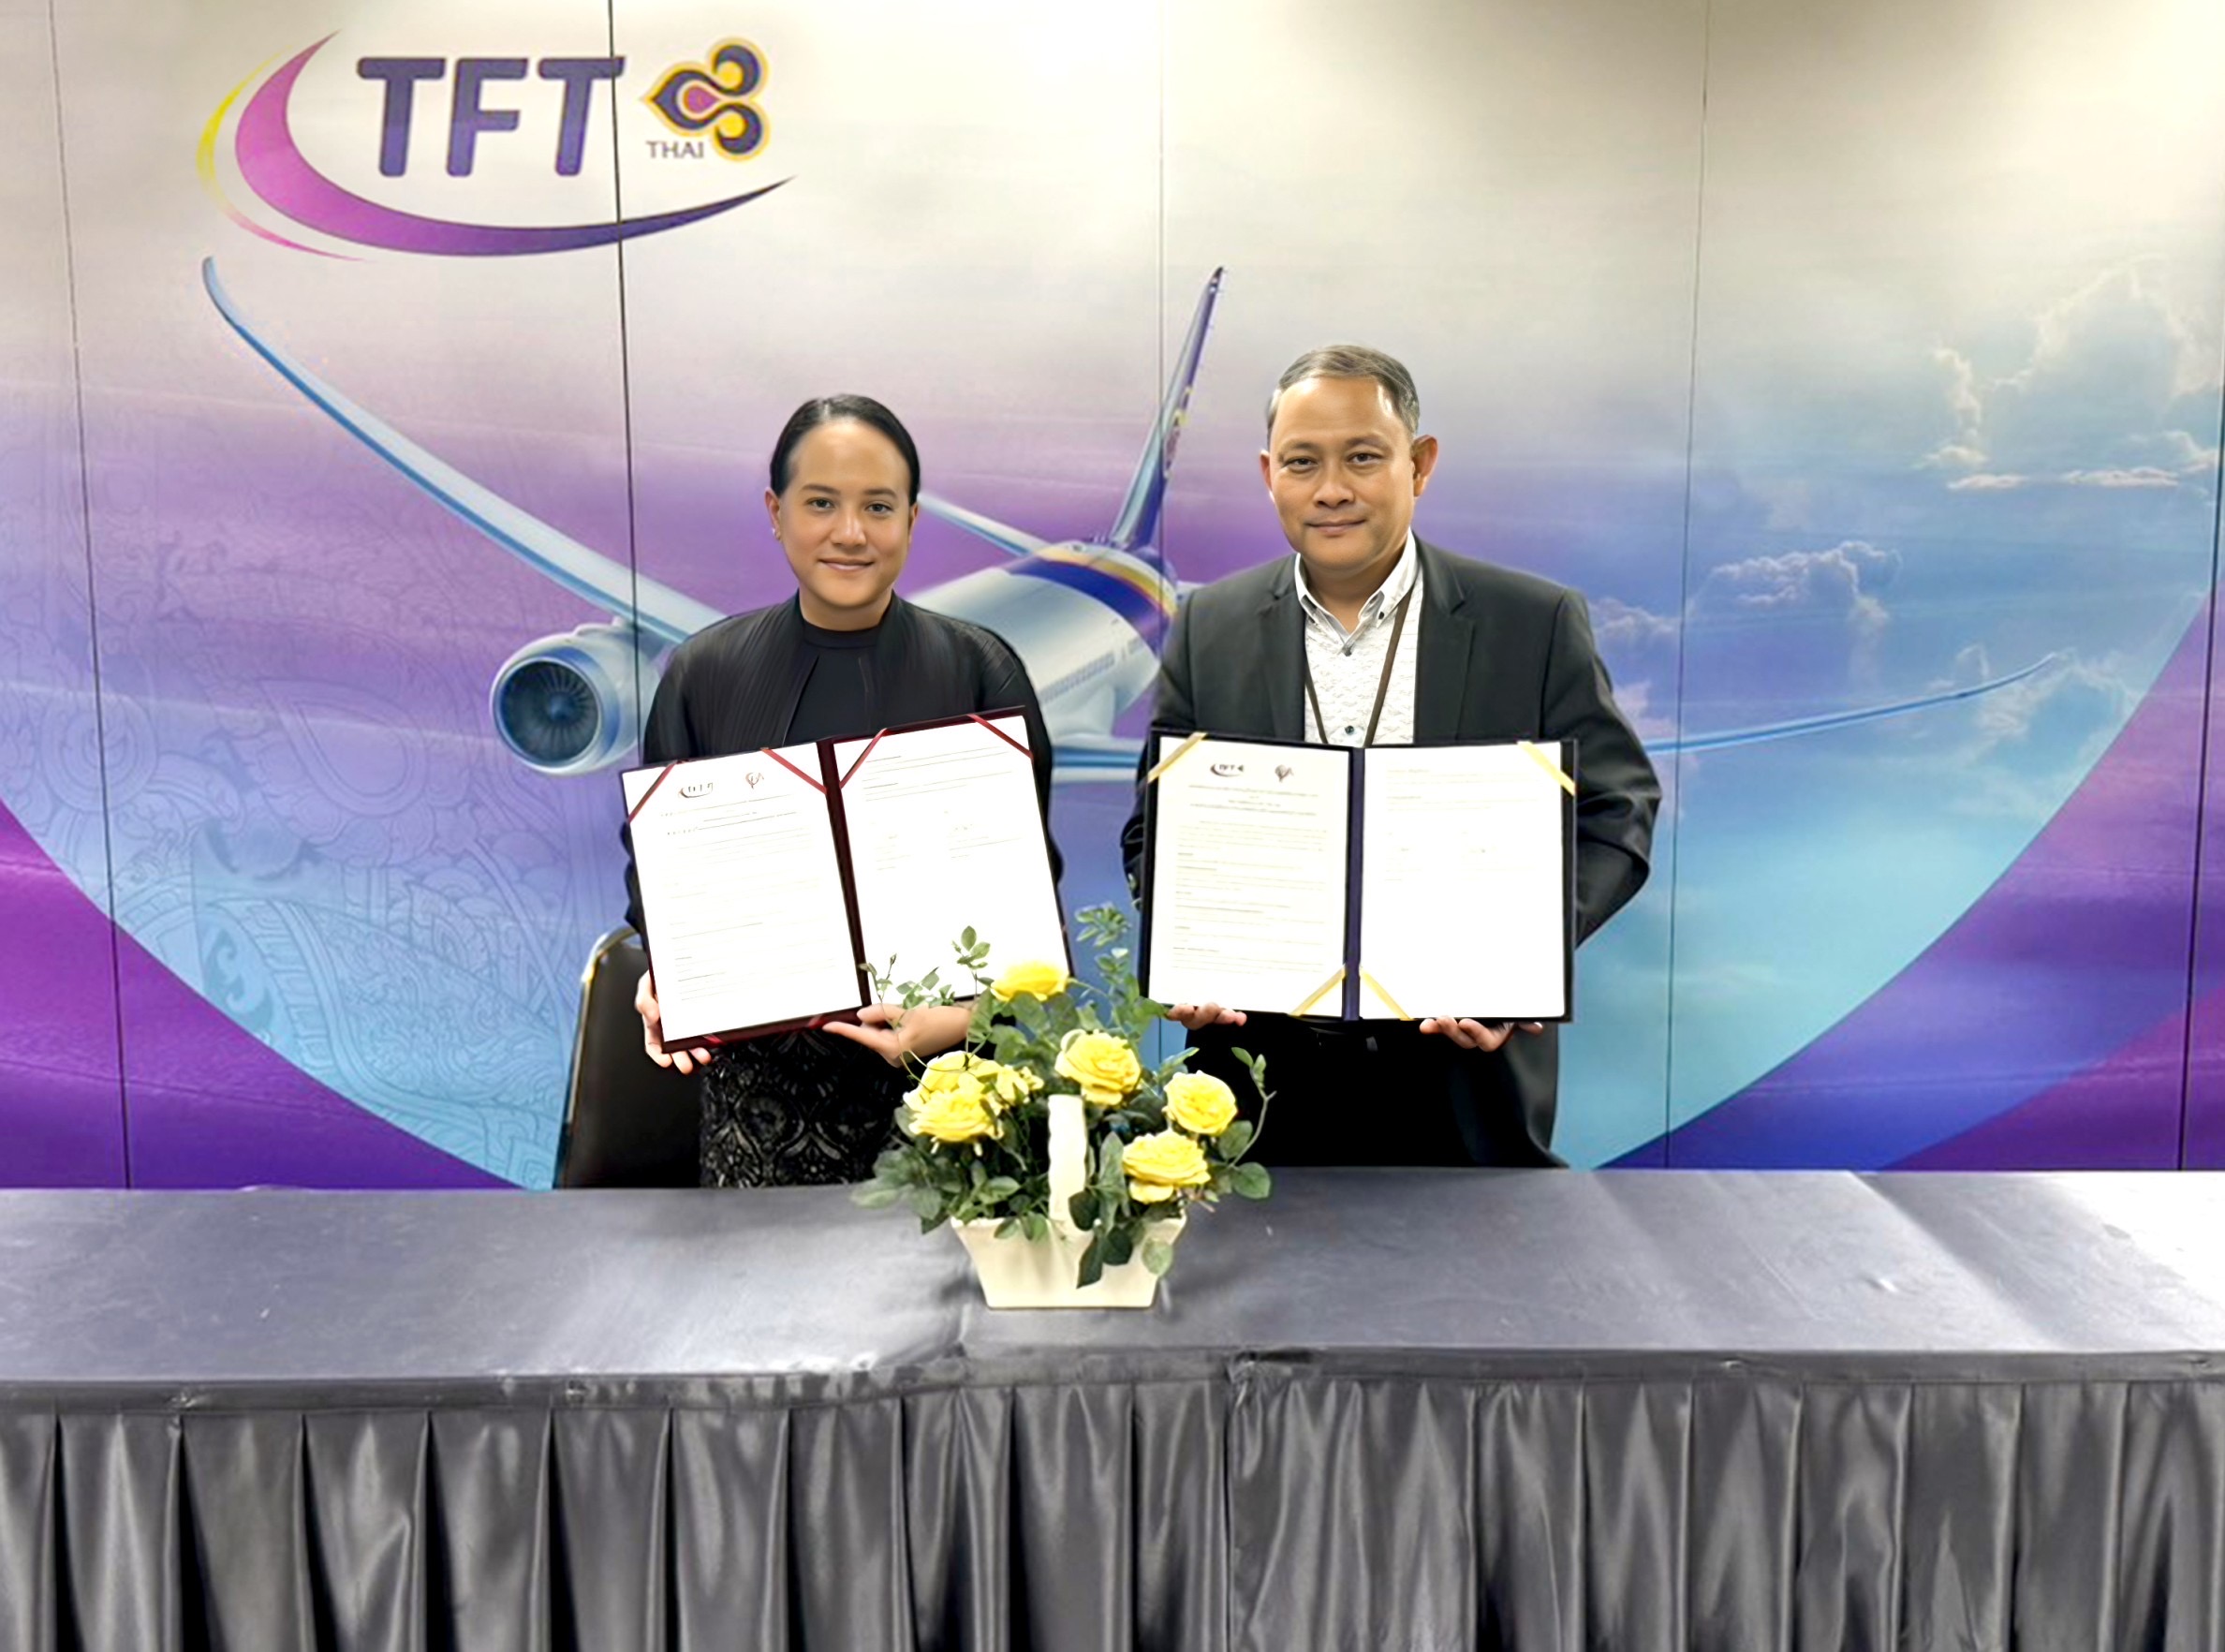 พิธีลงนามความร่วมมือ (MOU) ระหว่าง CPA (Thailand) และ Thai Flight Training (TFT)